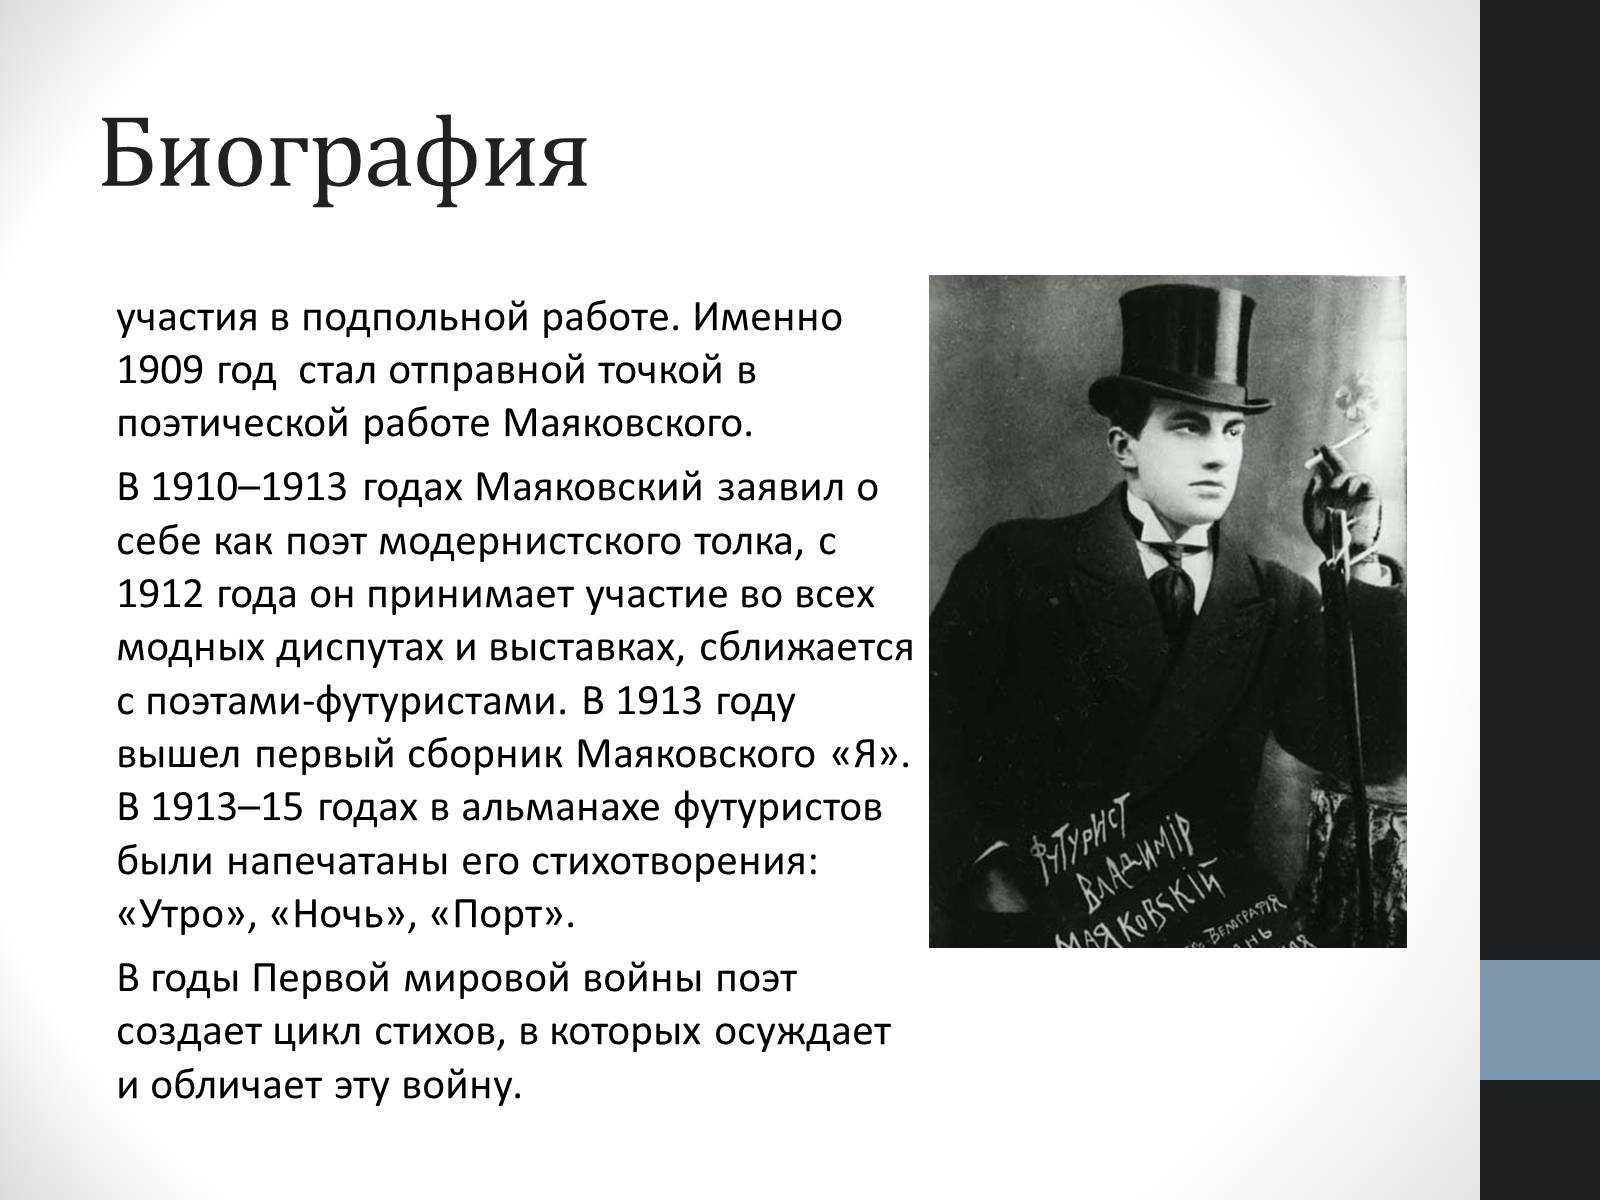 Владимир владимирович маяковский: биография, личная жизнь, творчество, память